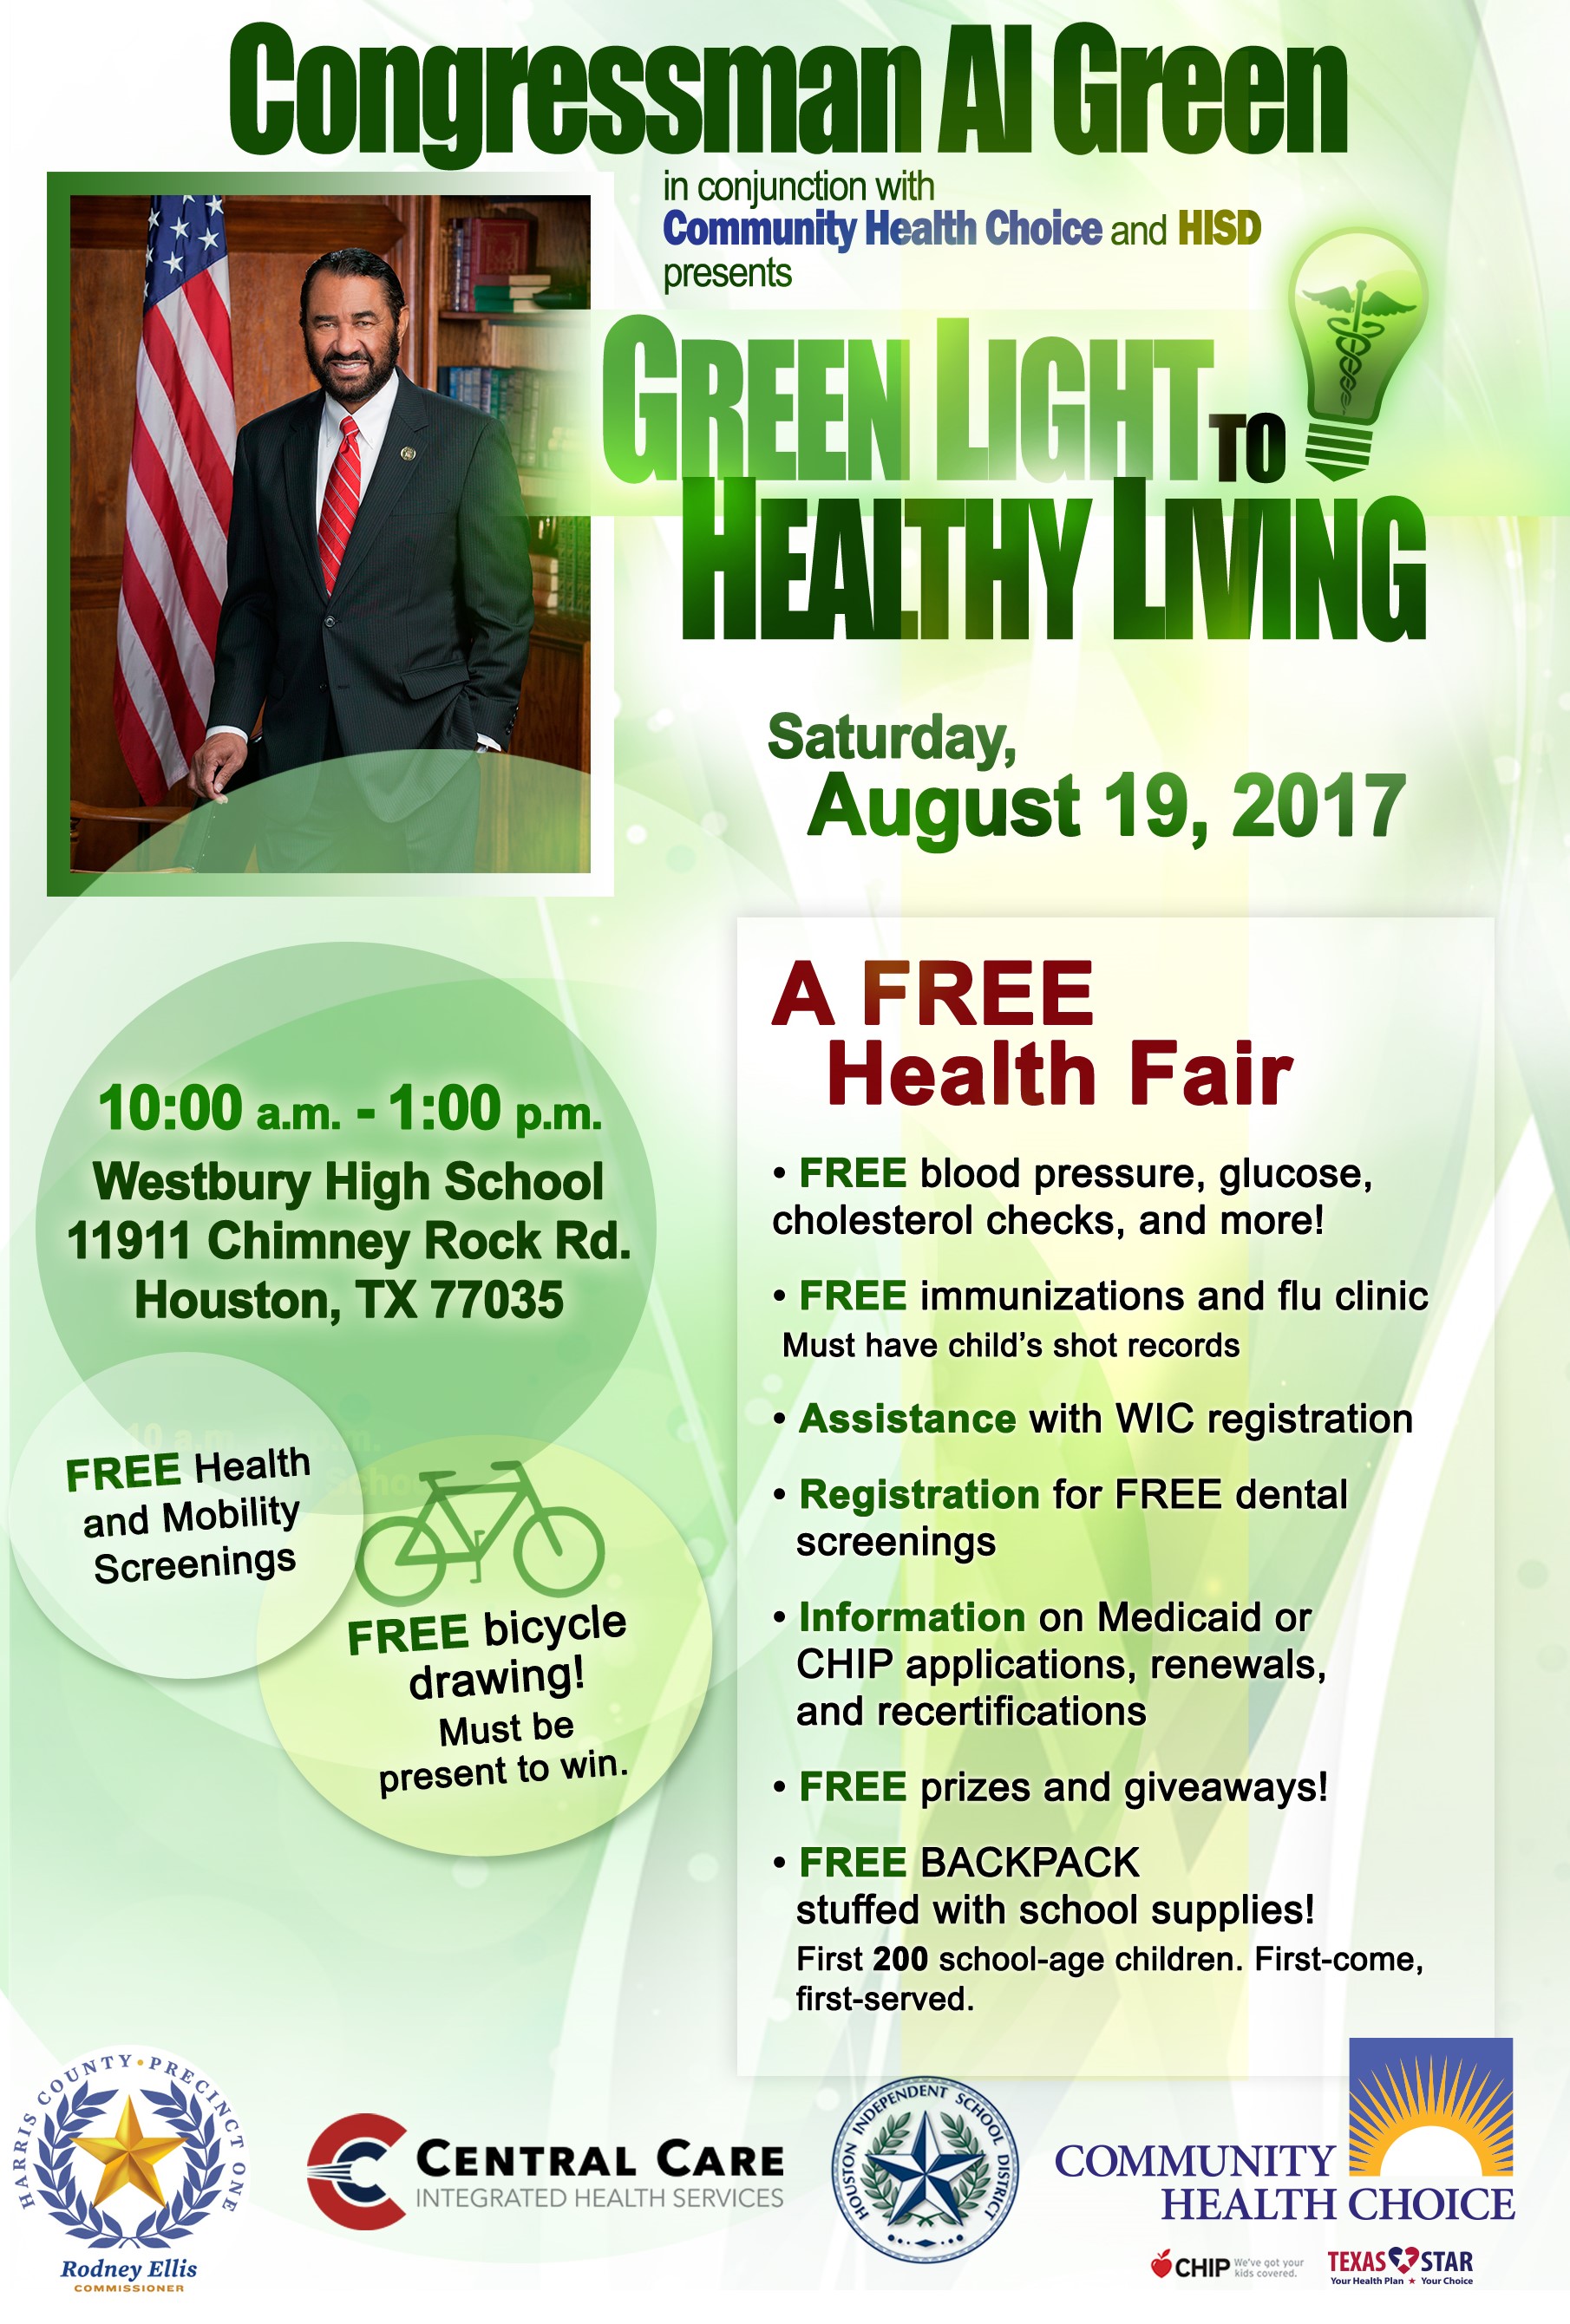 2017 Congressman Al Green Free Health Fair